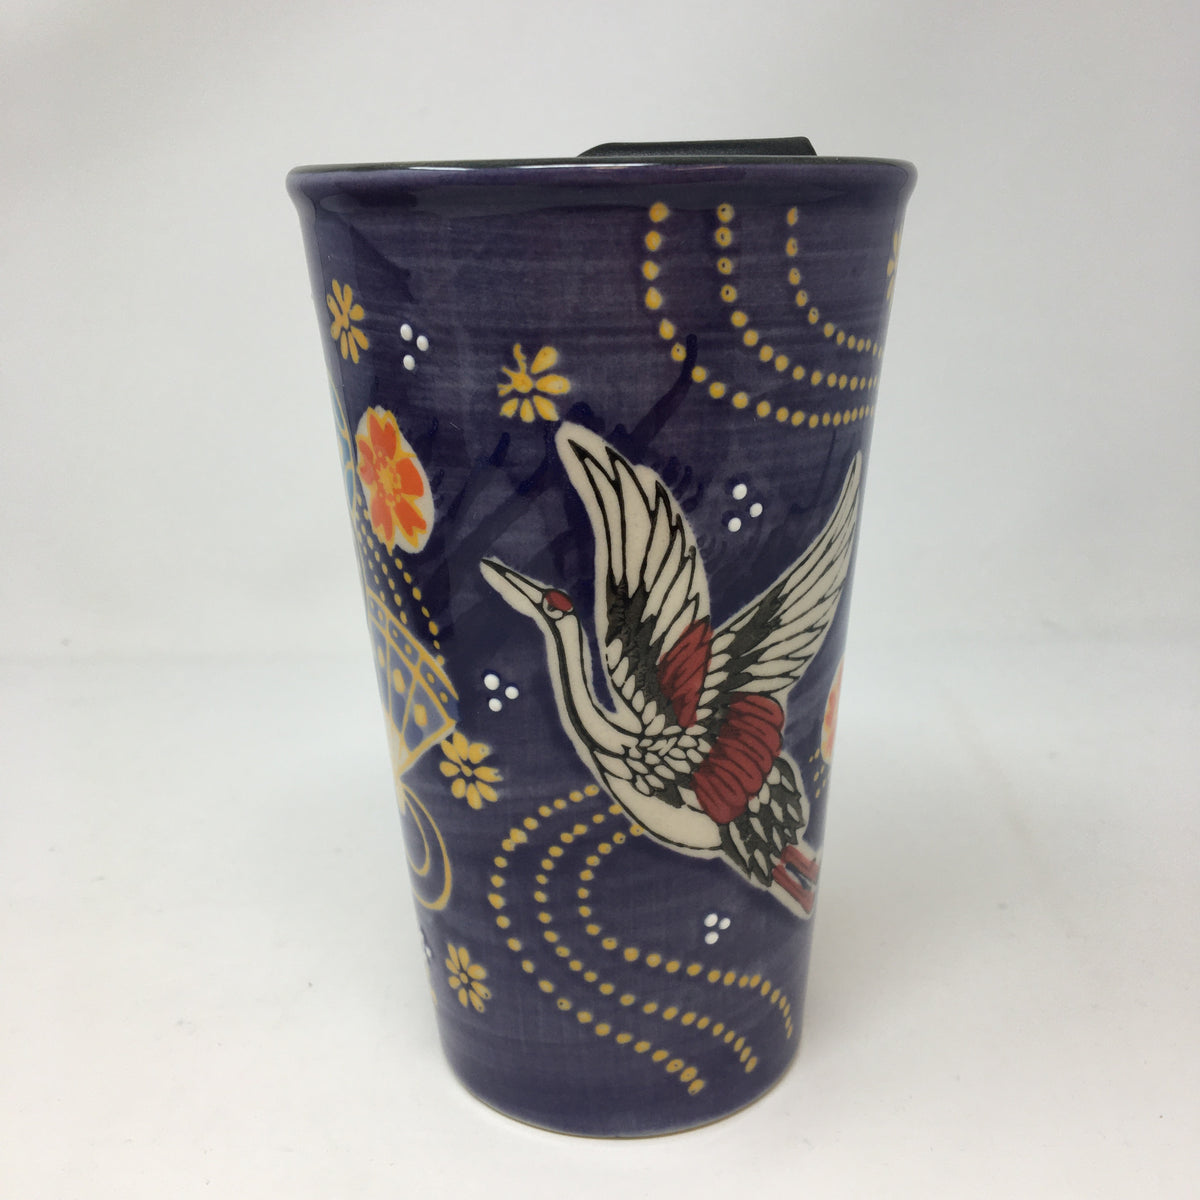 12oz Japanese Ceramic Glass Travel Mug